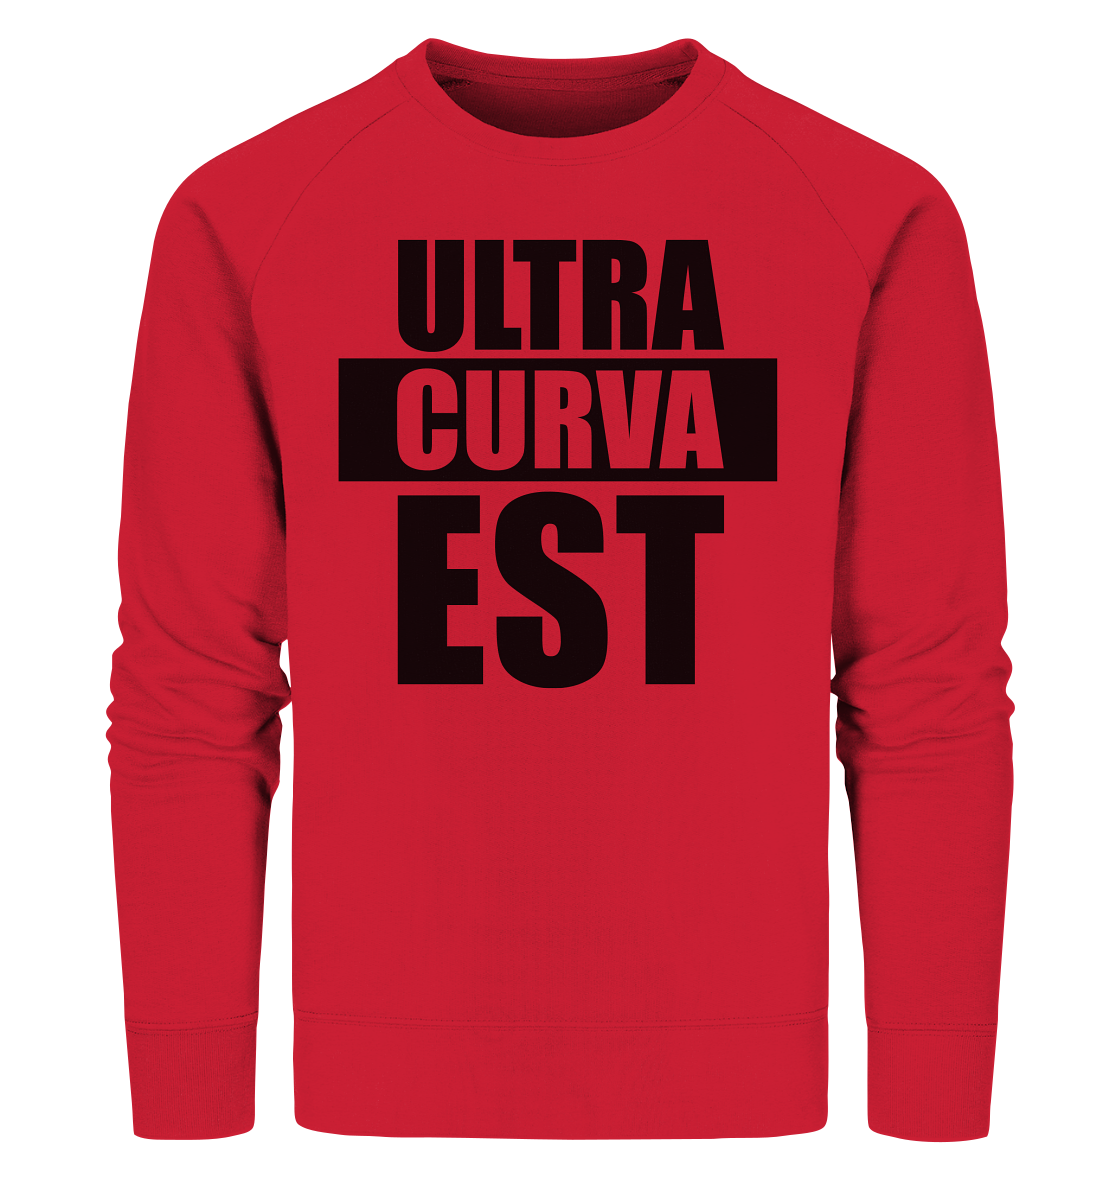 N.O.S.W. BLOCK Ultras Sweater "ULTRA CURVA EST" Männer Organic Sweatshirt rot